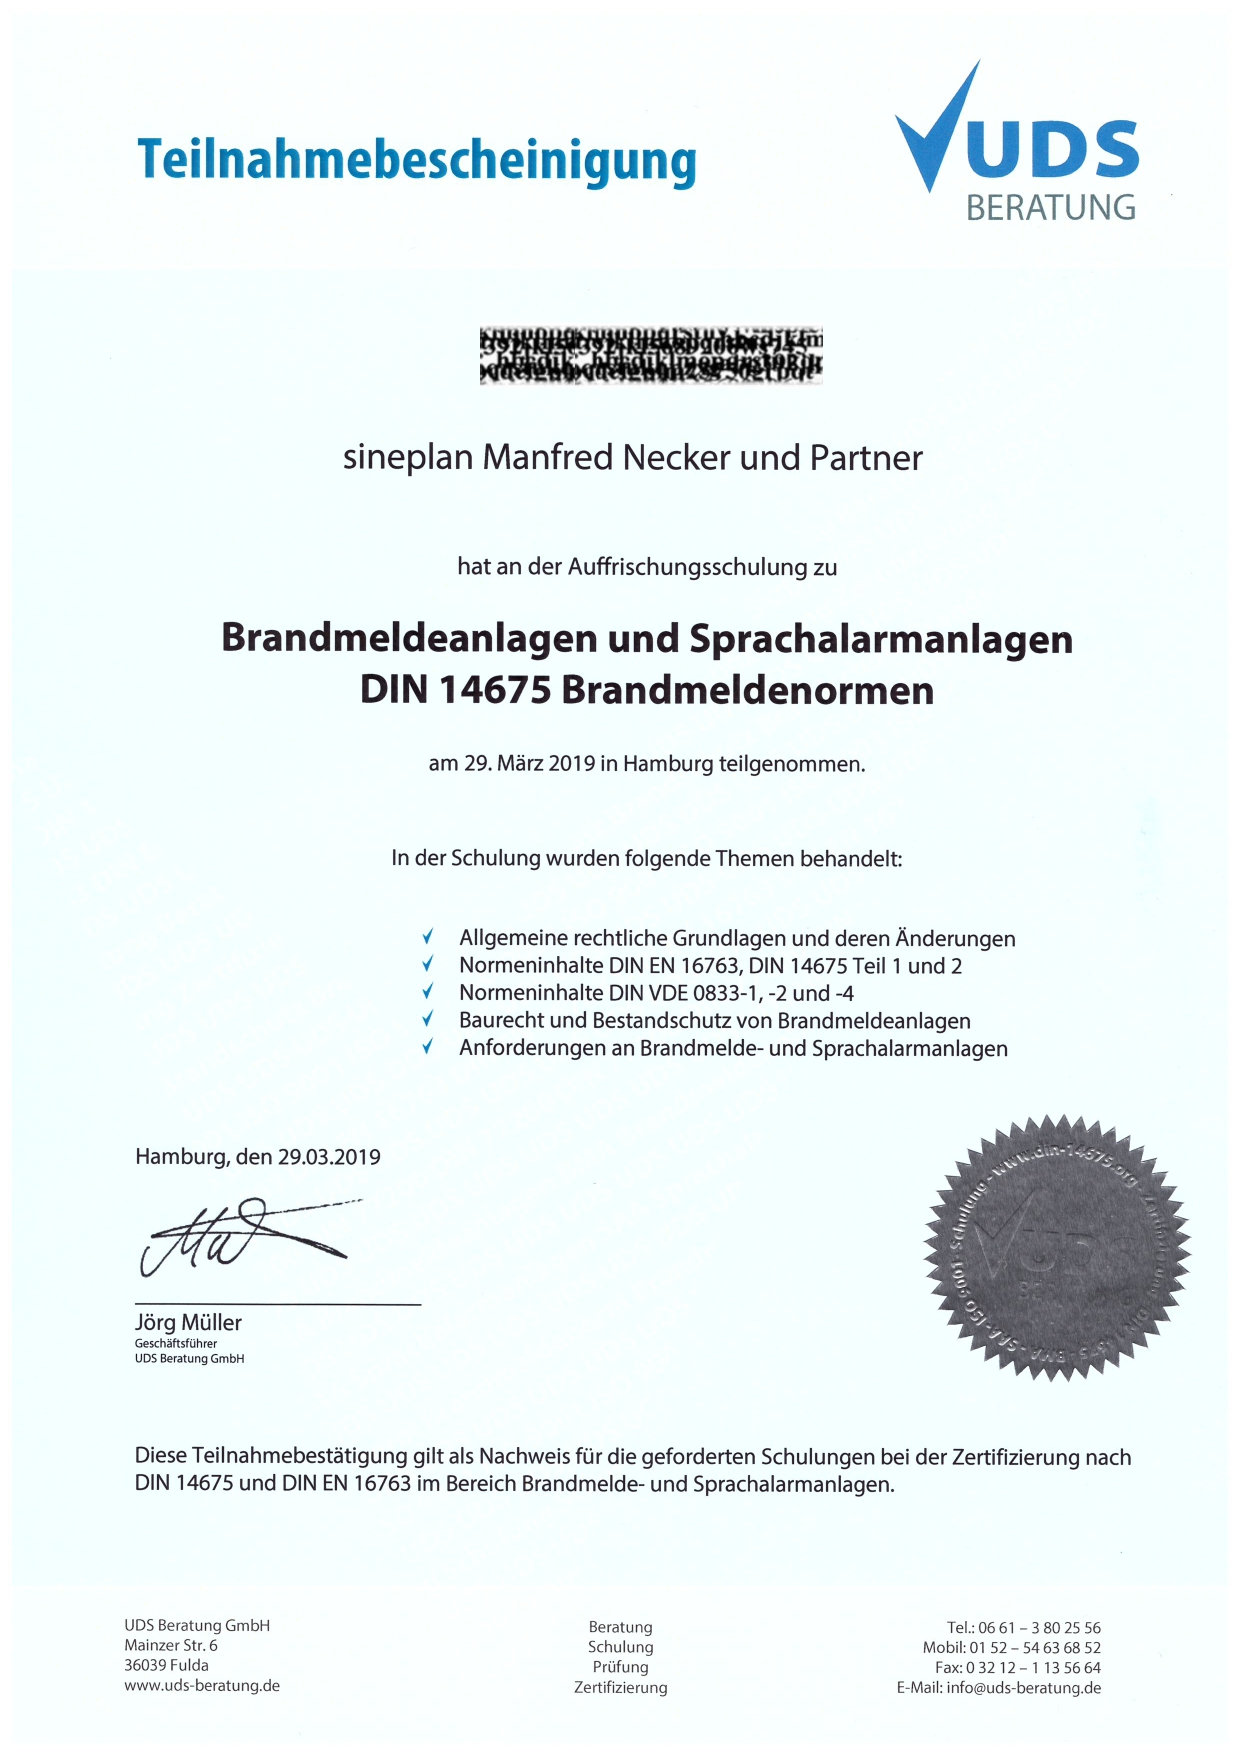 sineplan - Zertifikat UDS 2019 Brandmeldeanlagen und Sprachalarmanlagen